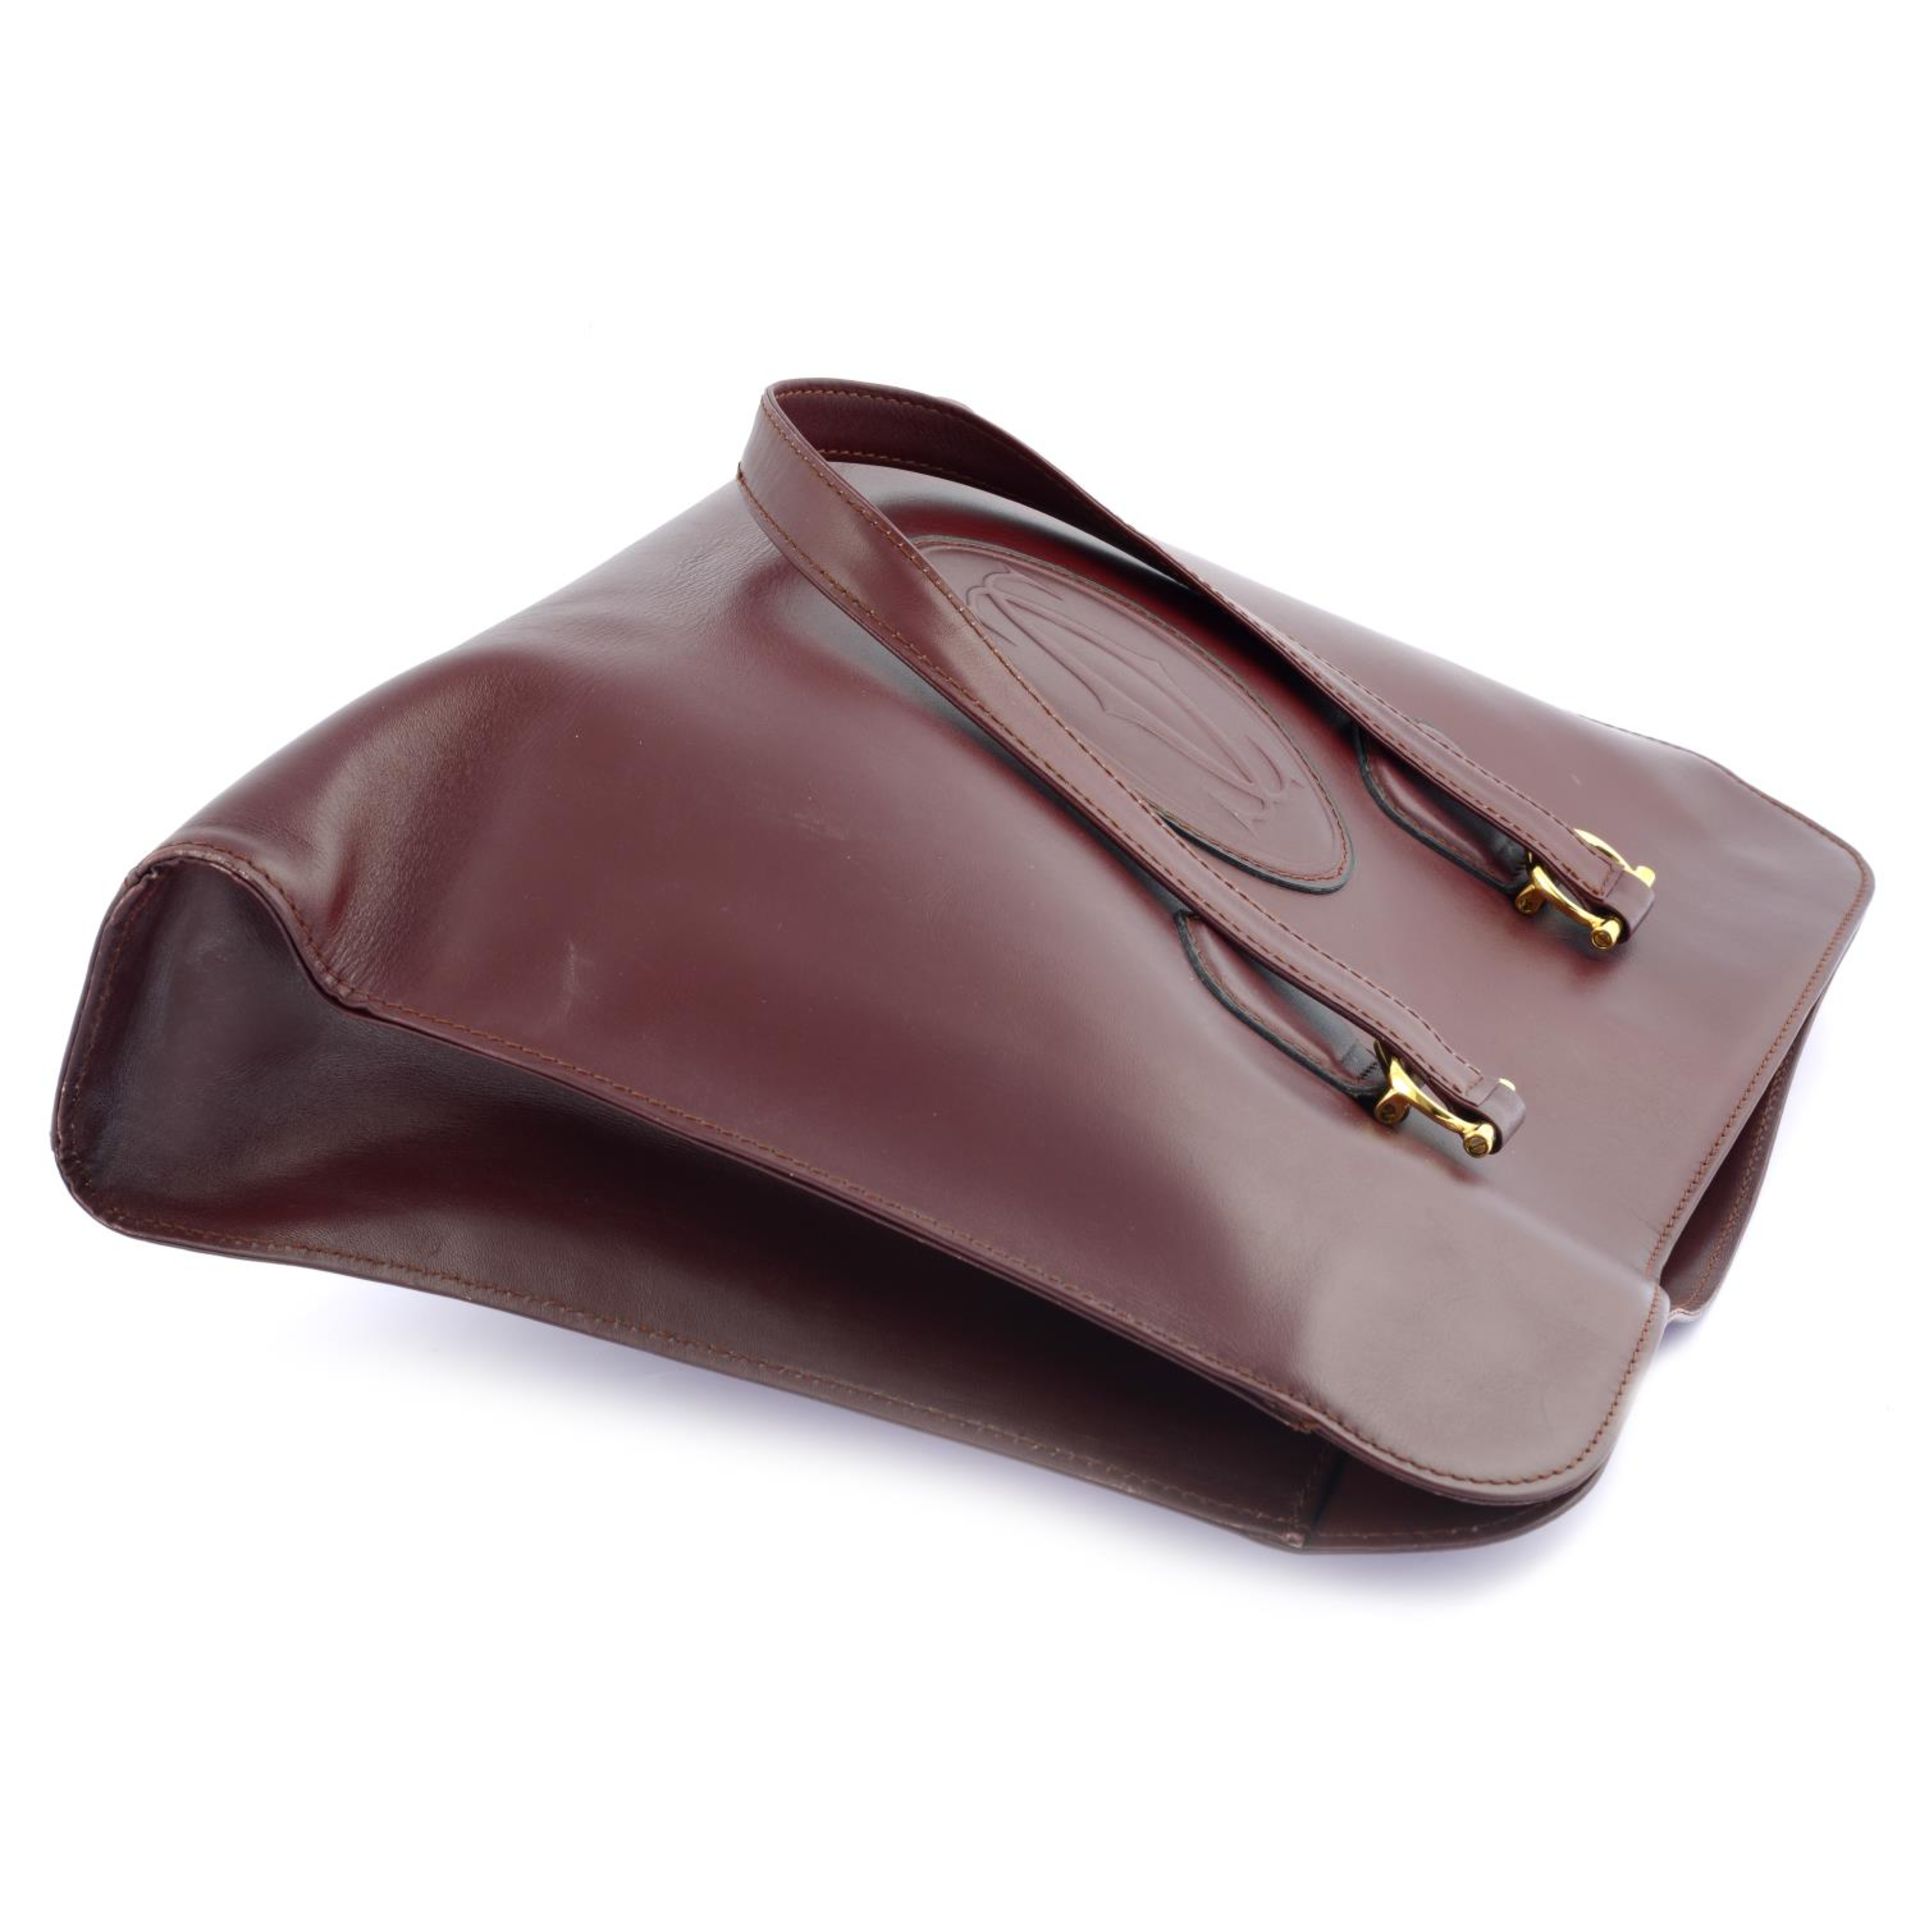 CARTIER - a burgundy leather Vintage Shopper handbag. - Image 3 of 4